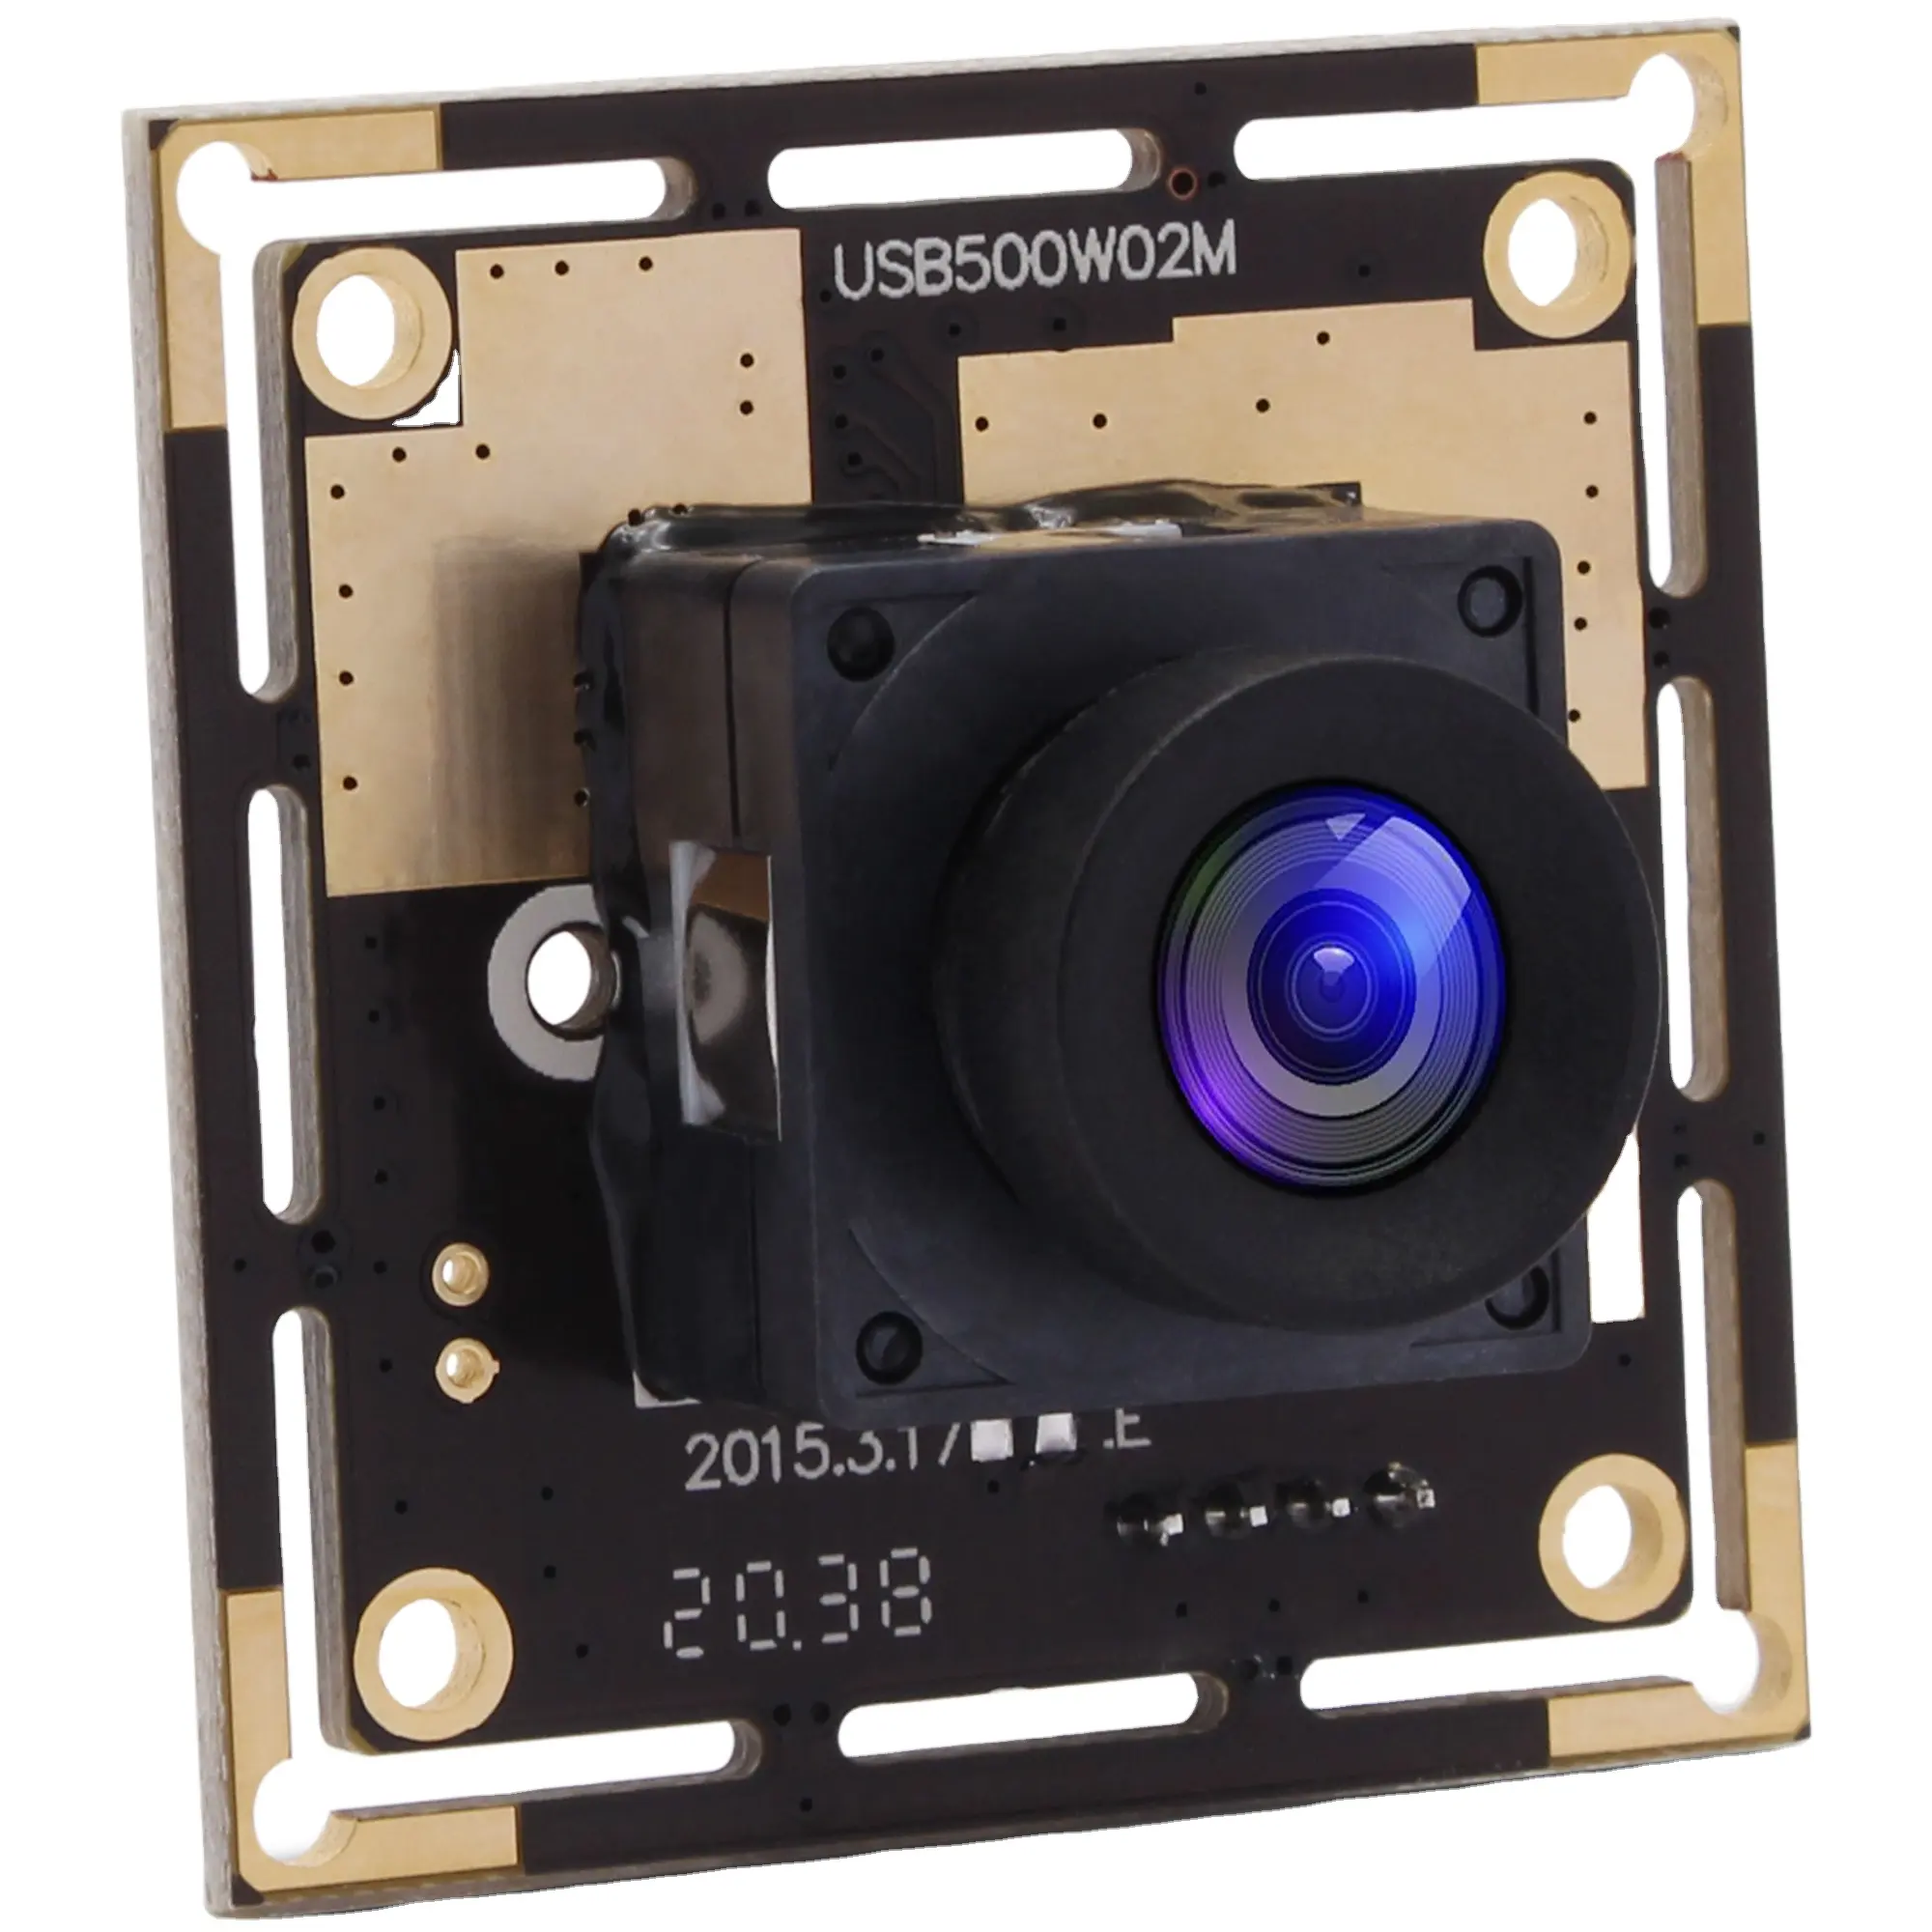 Elp usb 2.0 hd 5mp ov5640 modulo de câmera de segurança cctv, com 100 graus sem distorção